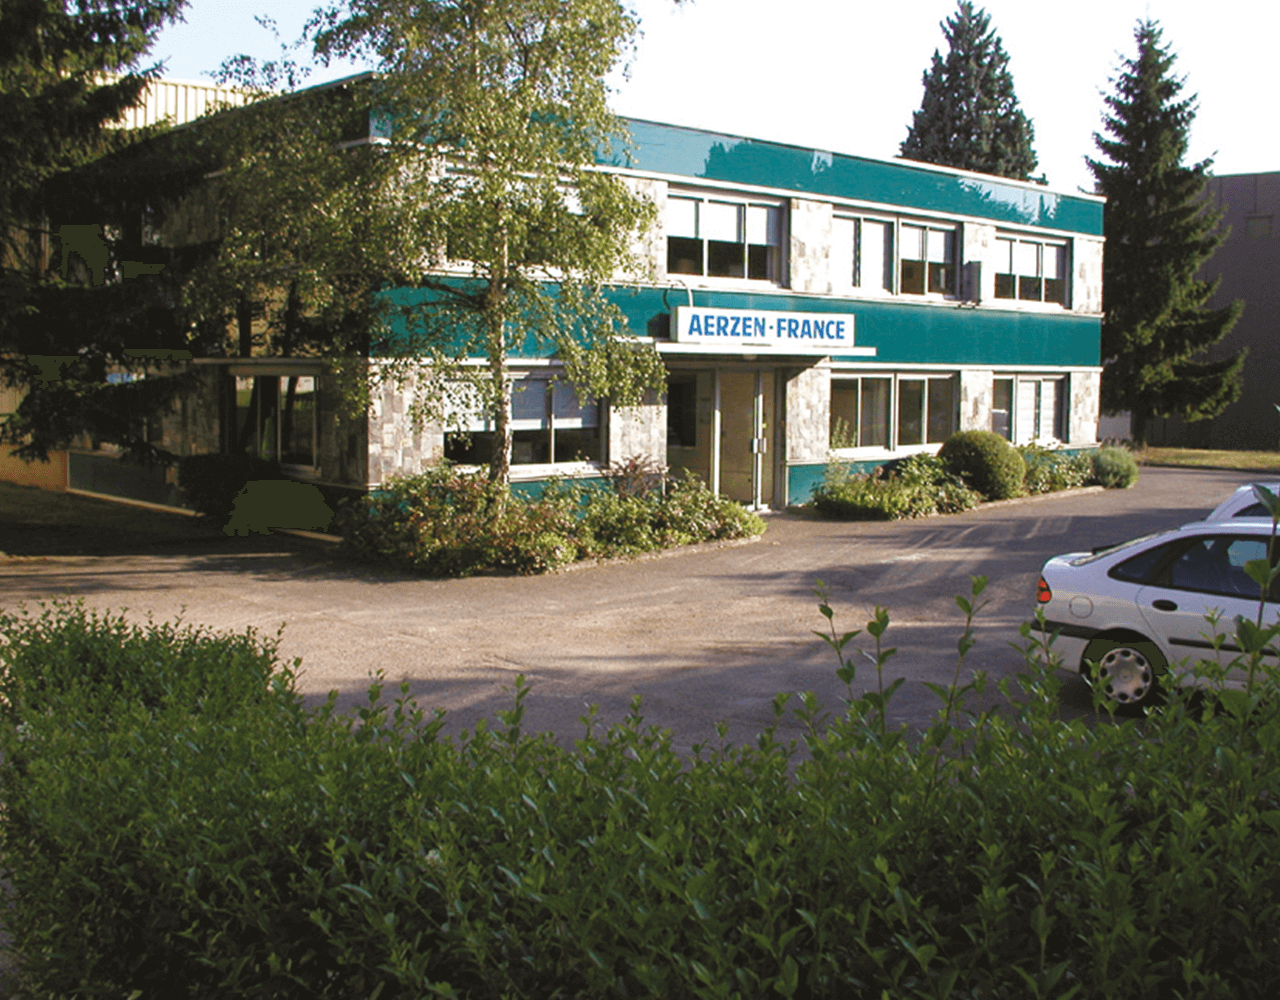 1969. įkurtos pirmos „Aerzener Maschinenfabrik“ pavaldžiosios įmonės užsienyje pastato nuotrauka